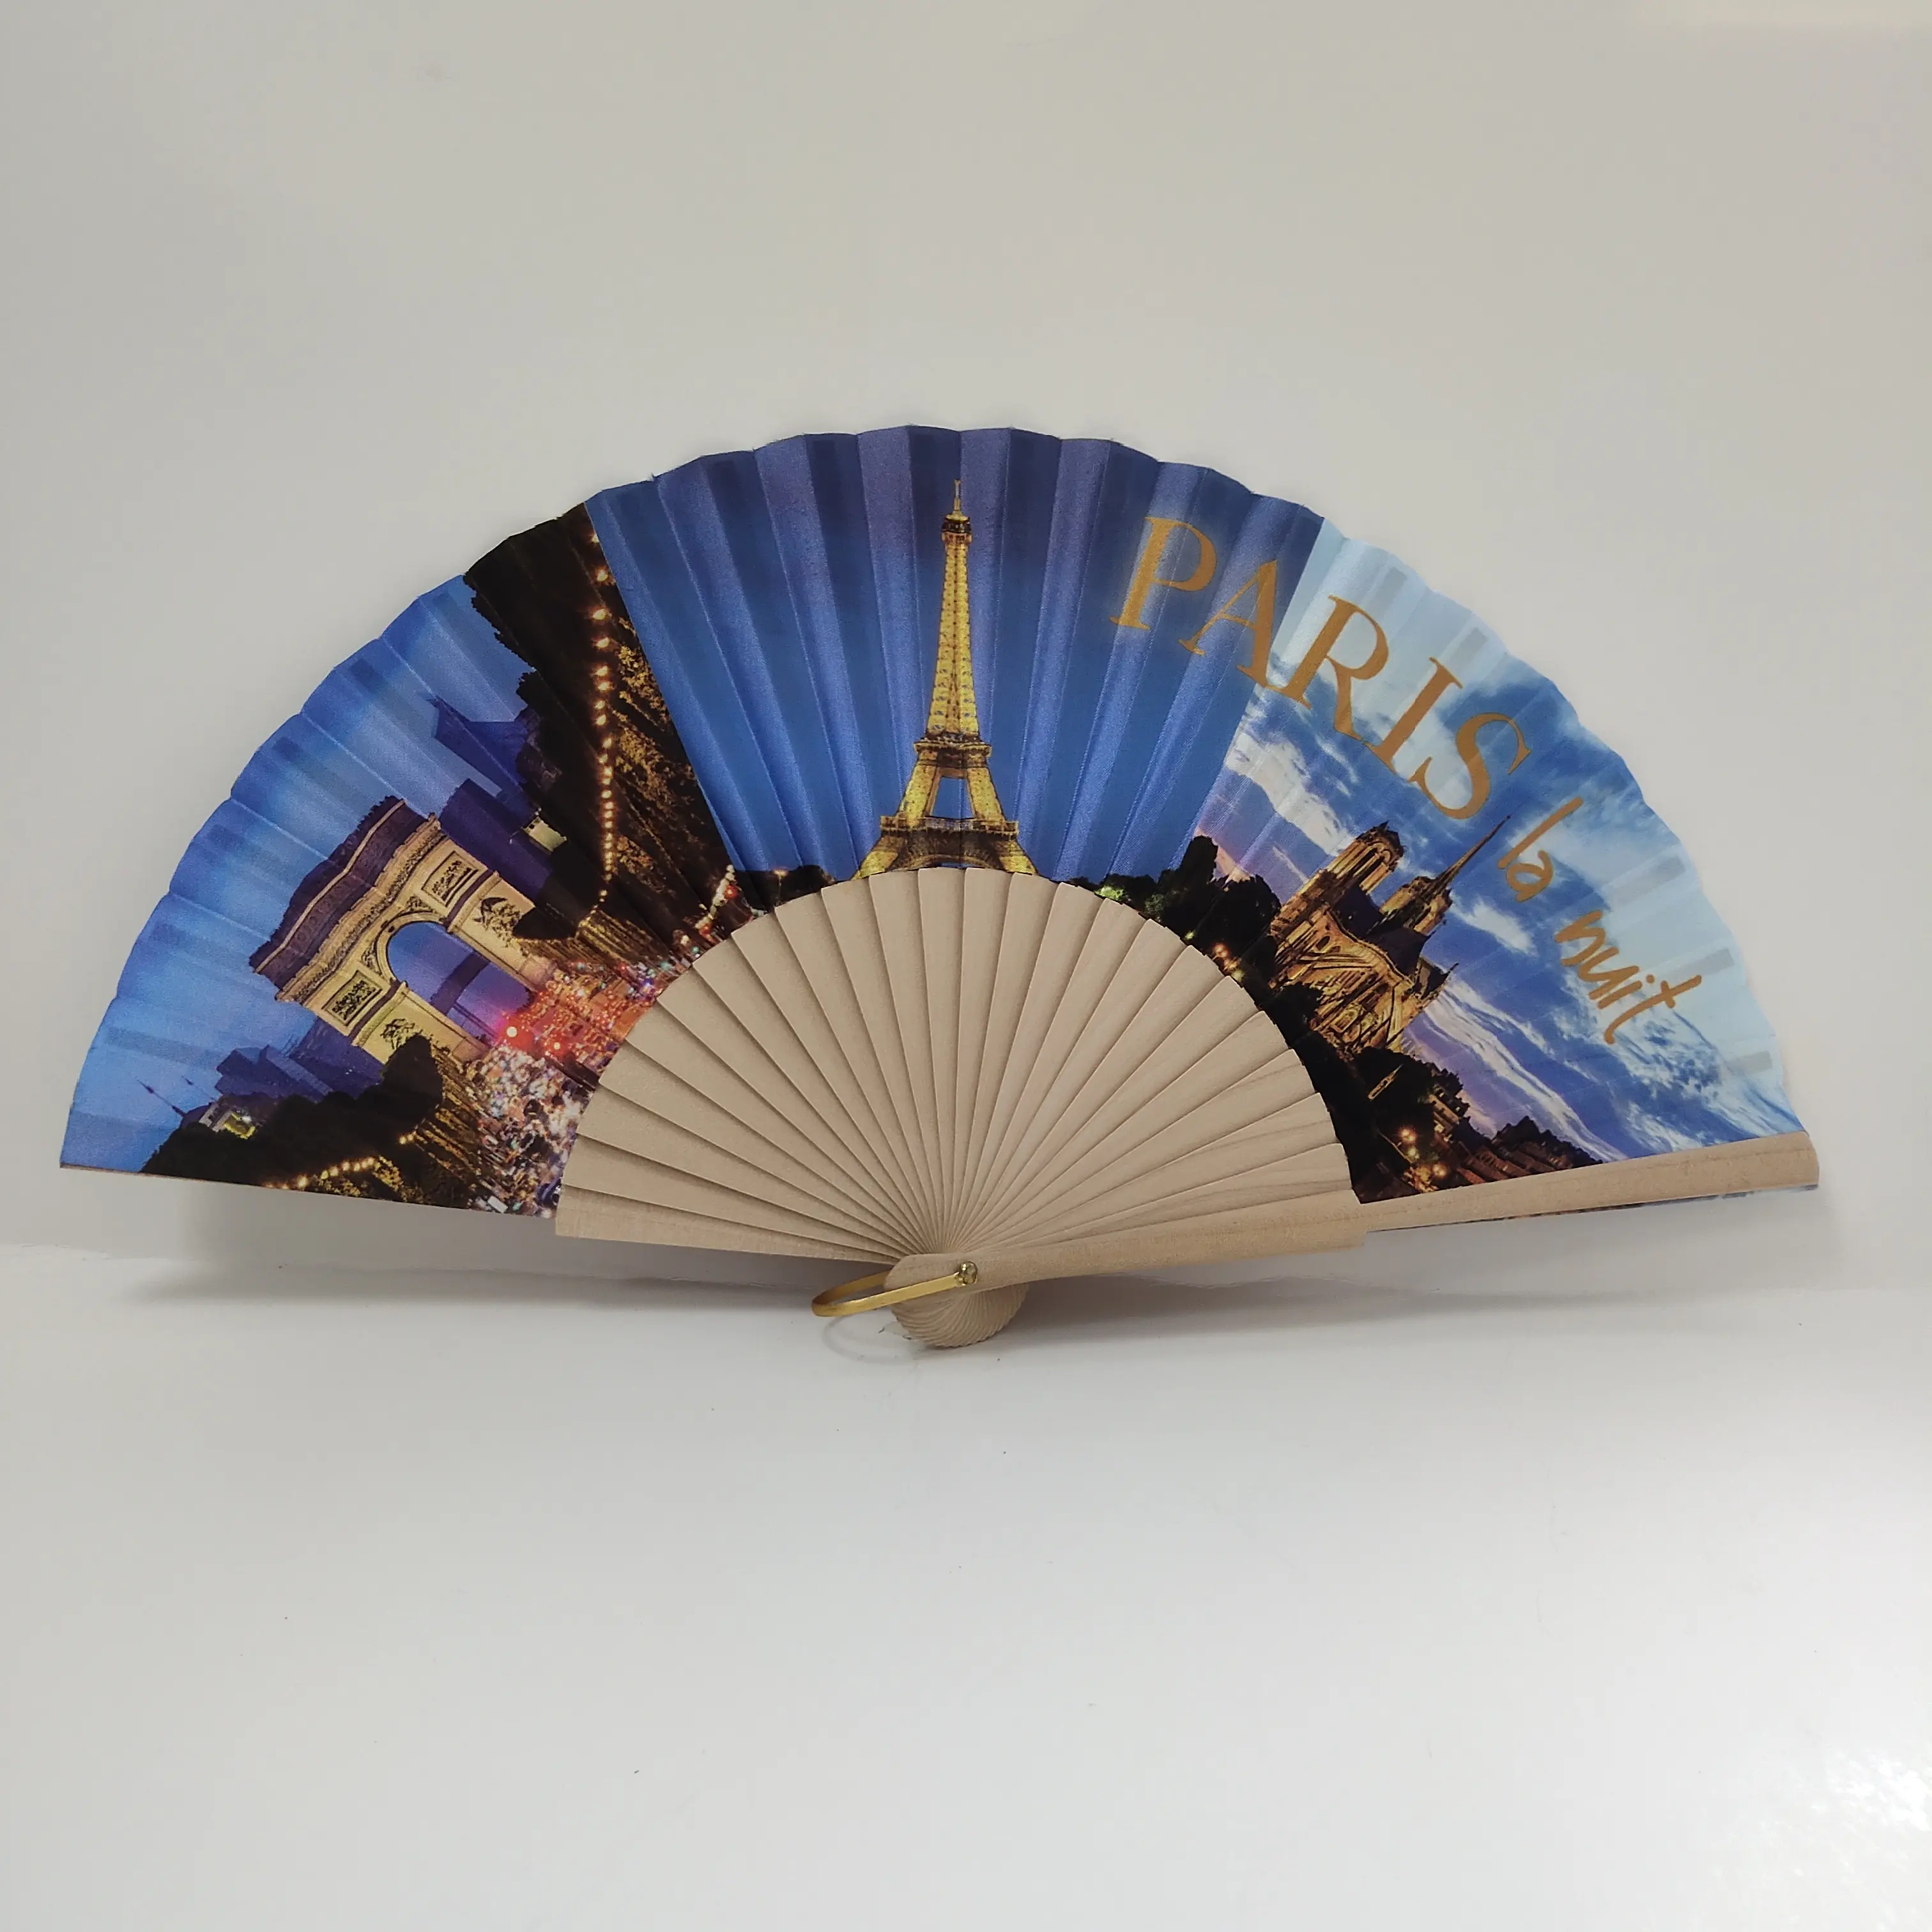 Chinesischer traditioneller klassischer hölzerner Bambus-Falthand-Spanien-Fan in kunden spezifischen neuen touristischen Souvenirs für Frauen